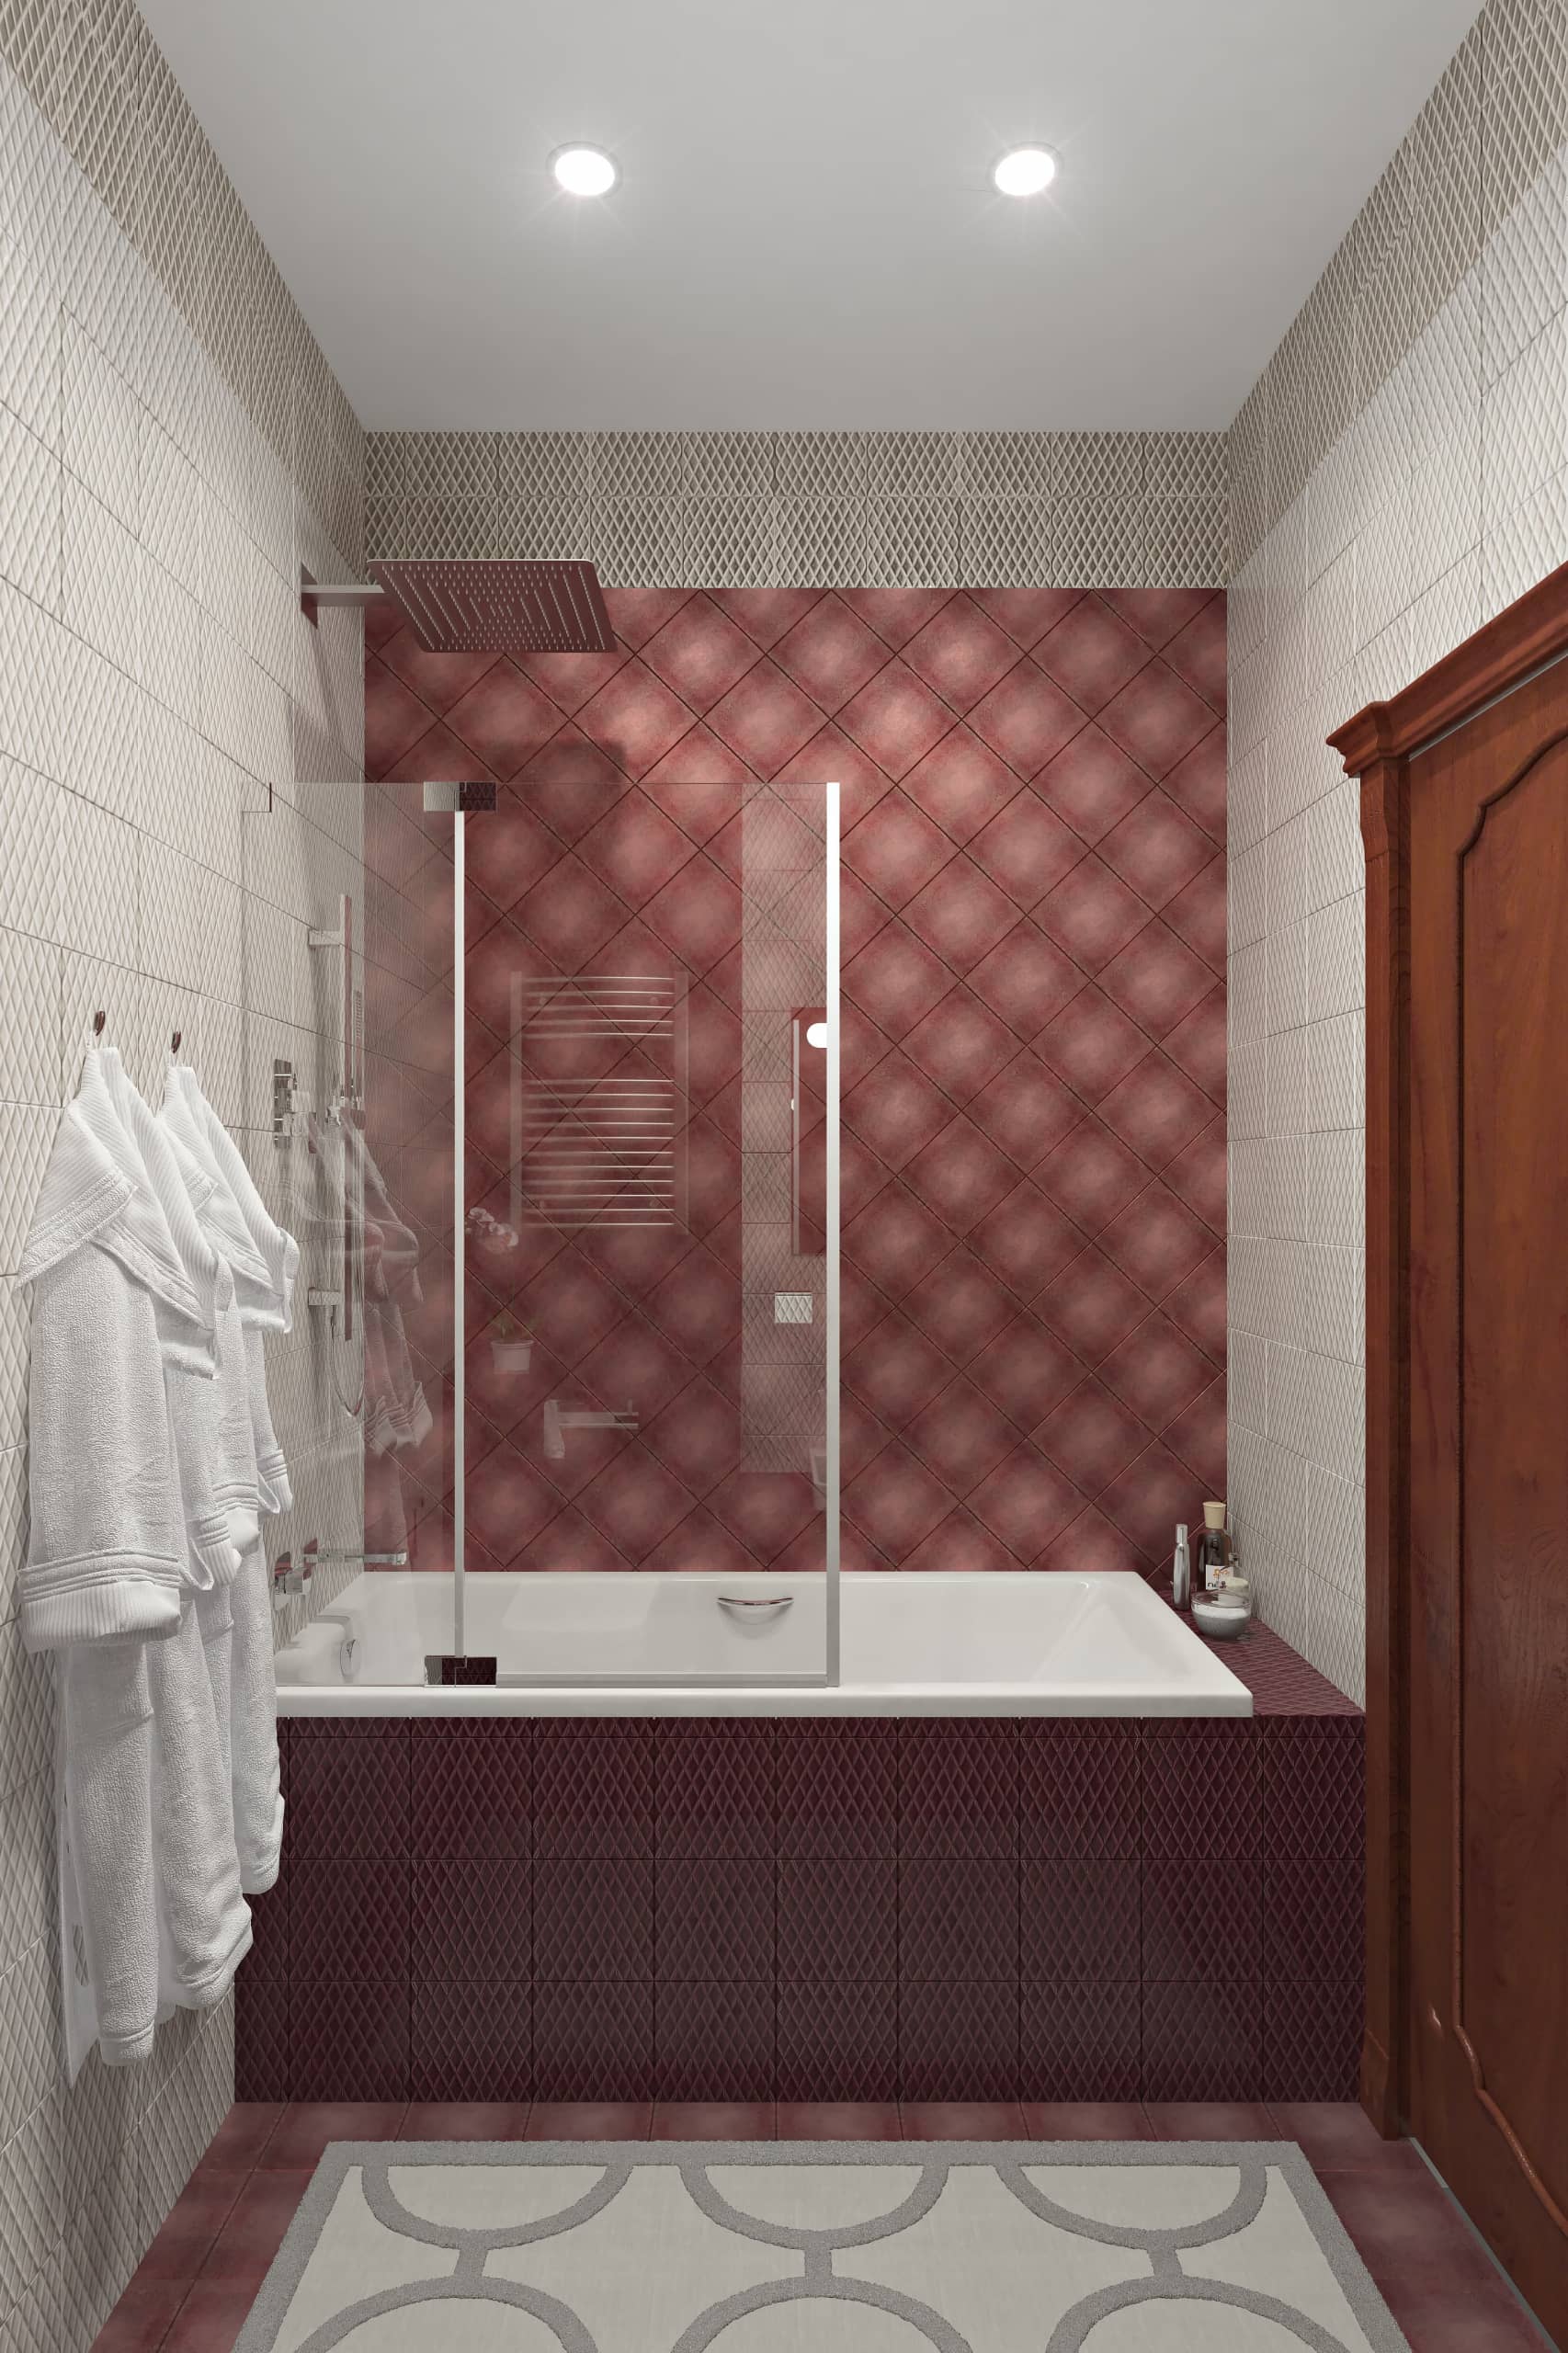 Бардовая плитка в ванной комнате придает ей света